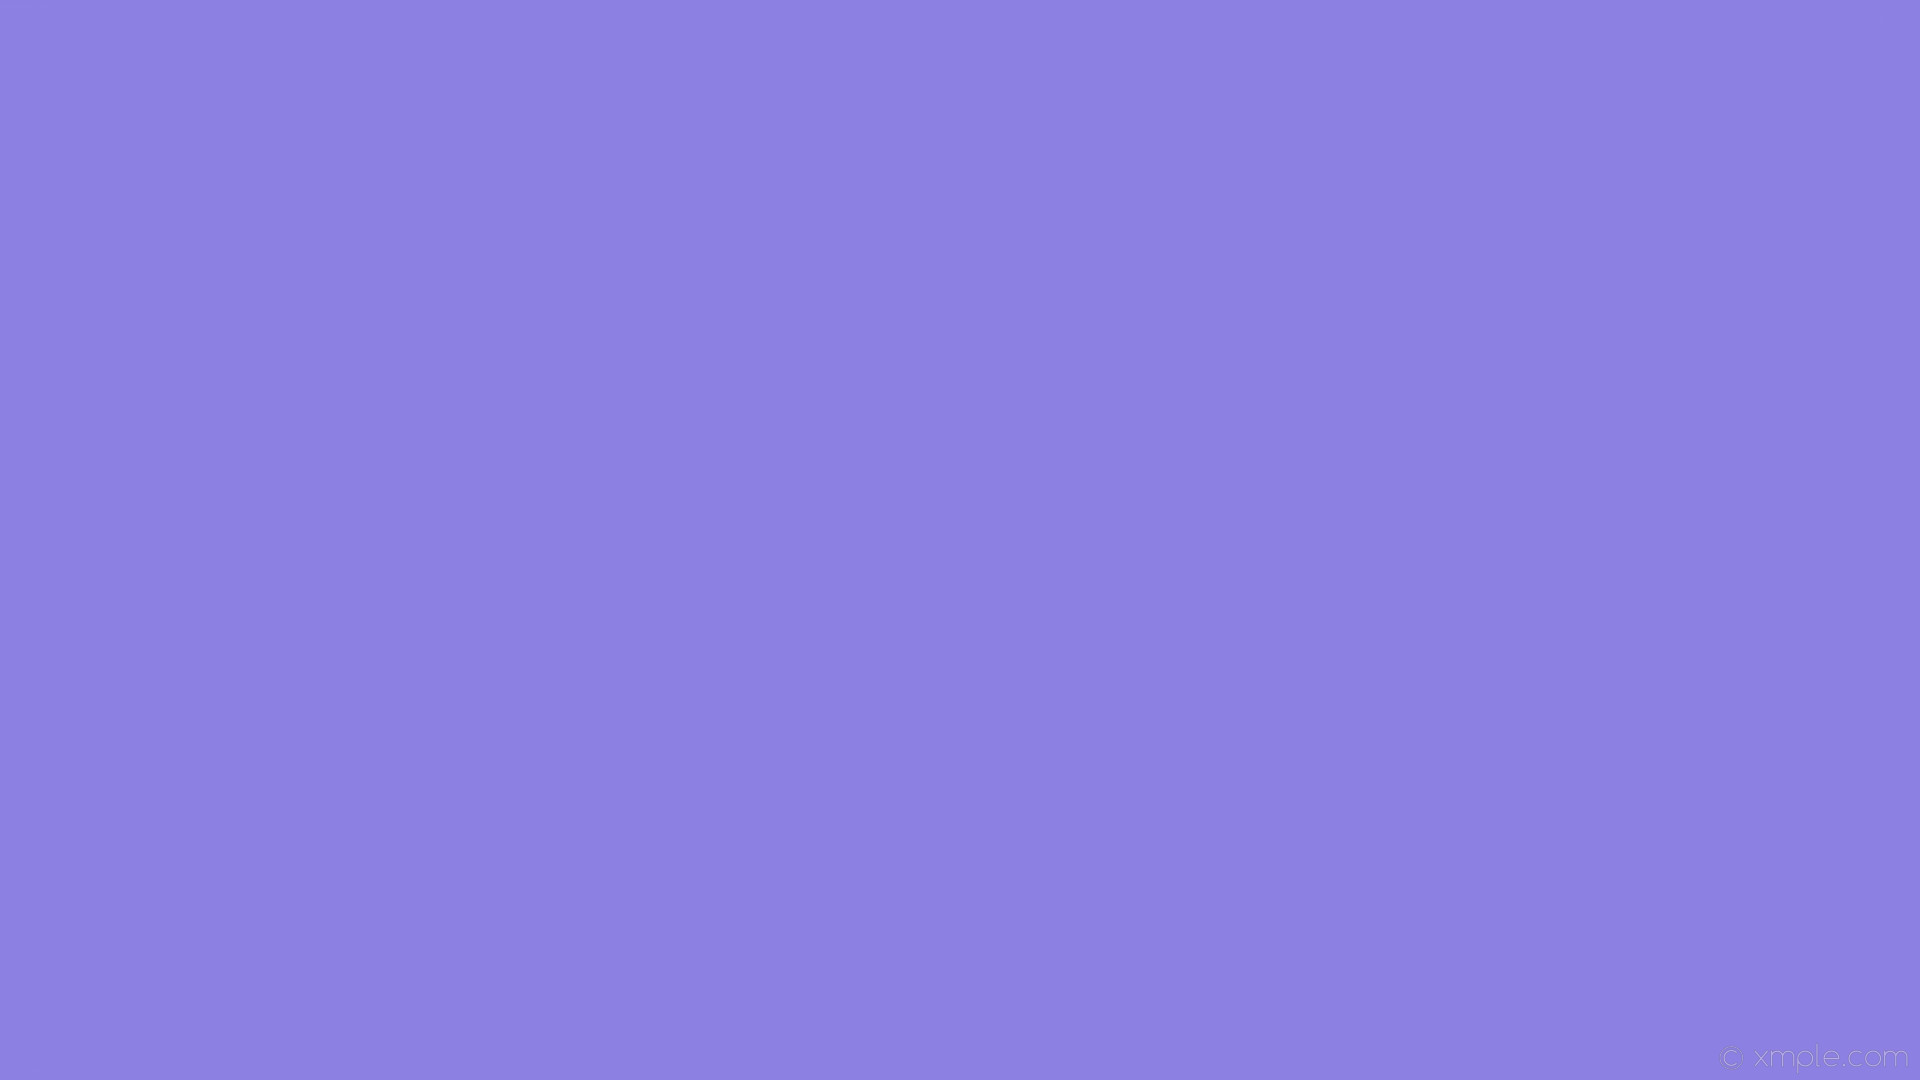 1920x1080 wallpaper blue one colour solid color single plain #8c80e3